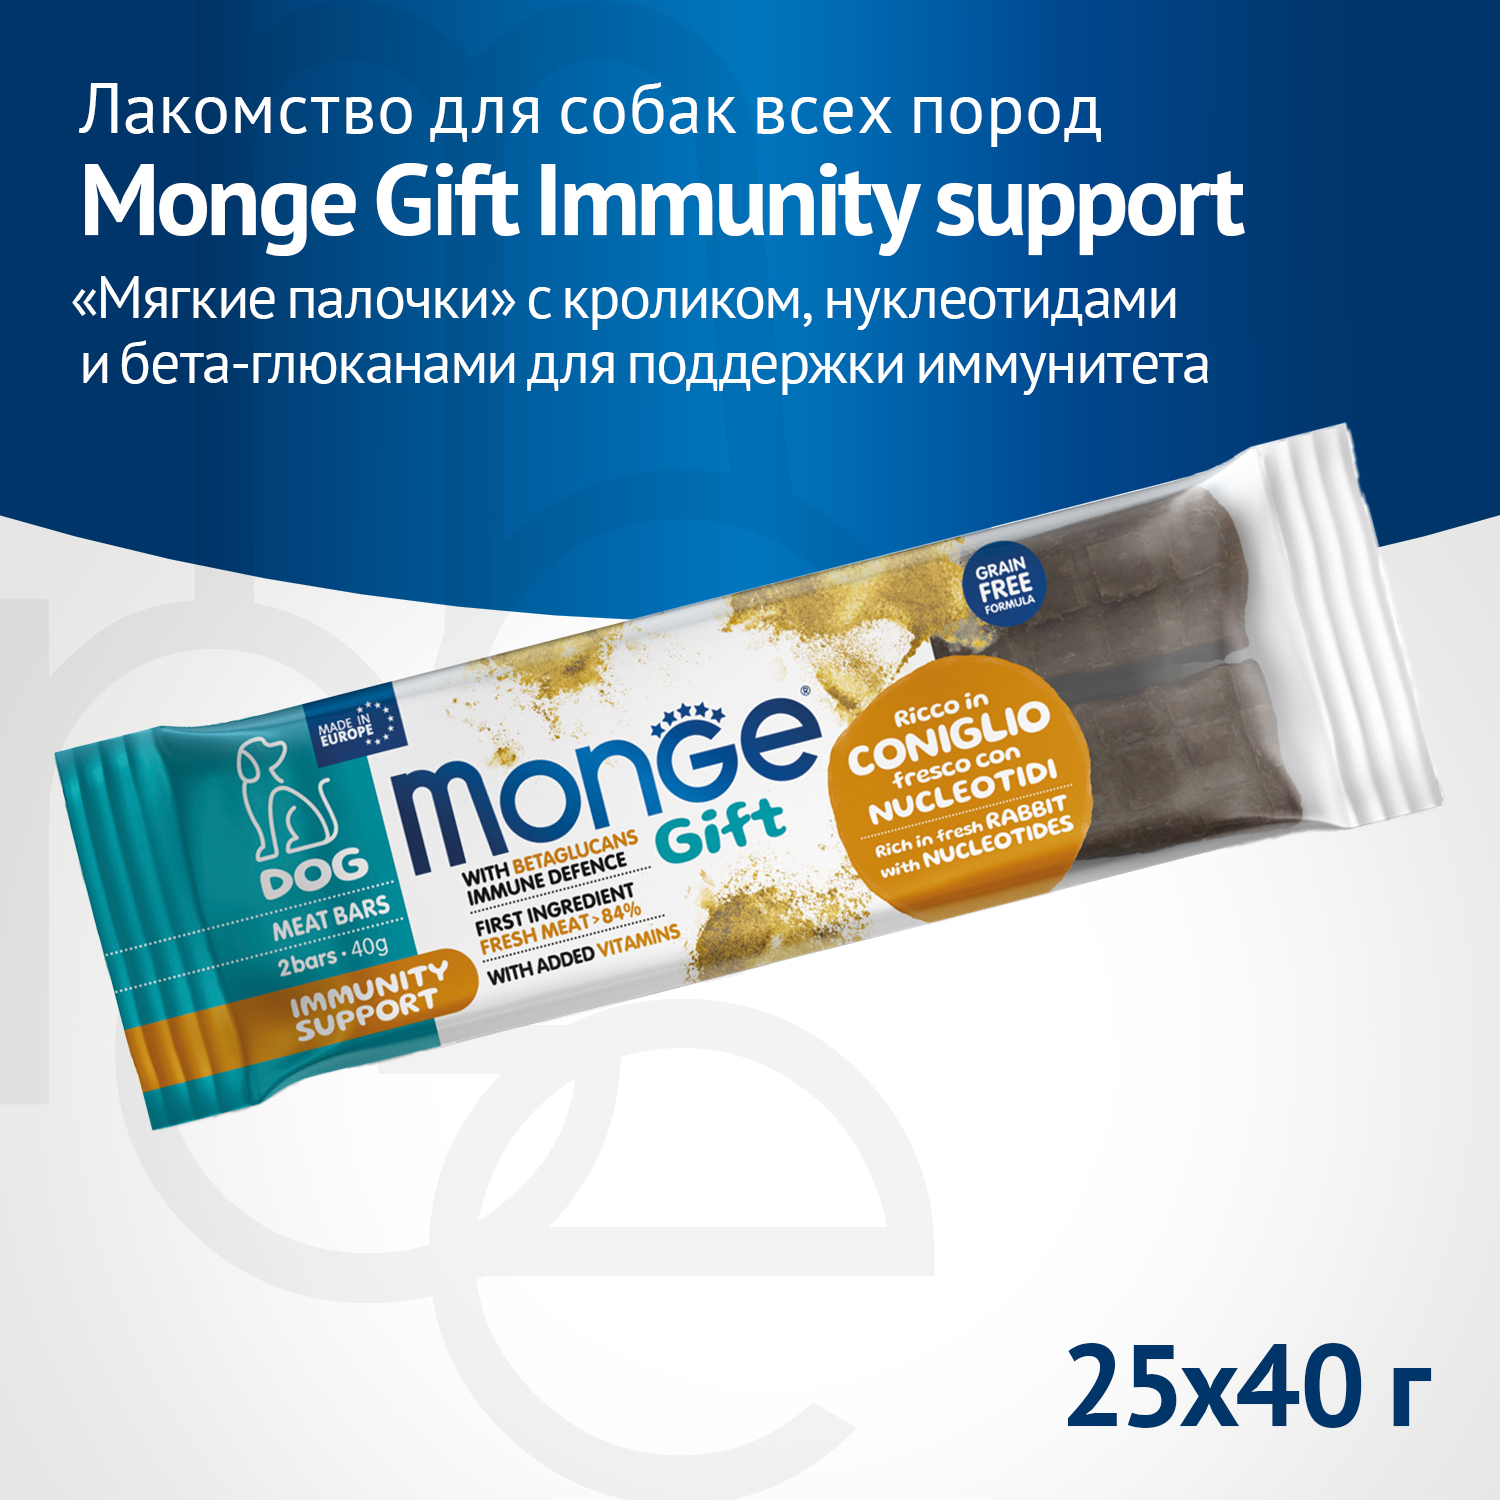 Лакомство Monge Gift Immunity support для собак всех пород "Мясные батончики" с кроликом, нуклеотидами и бета-глюканами для поддержки иммунитета 40 г